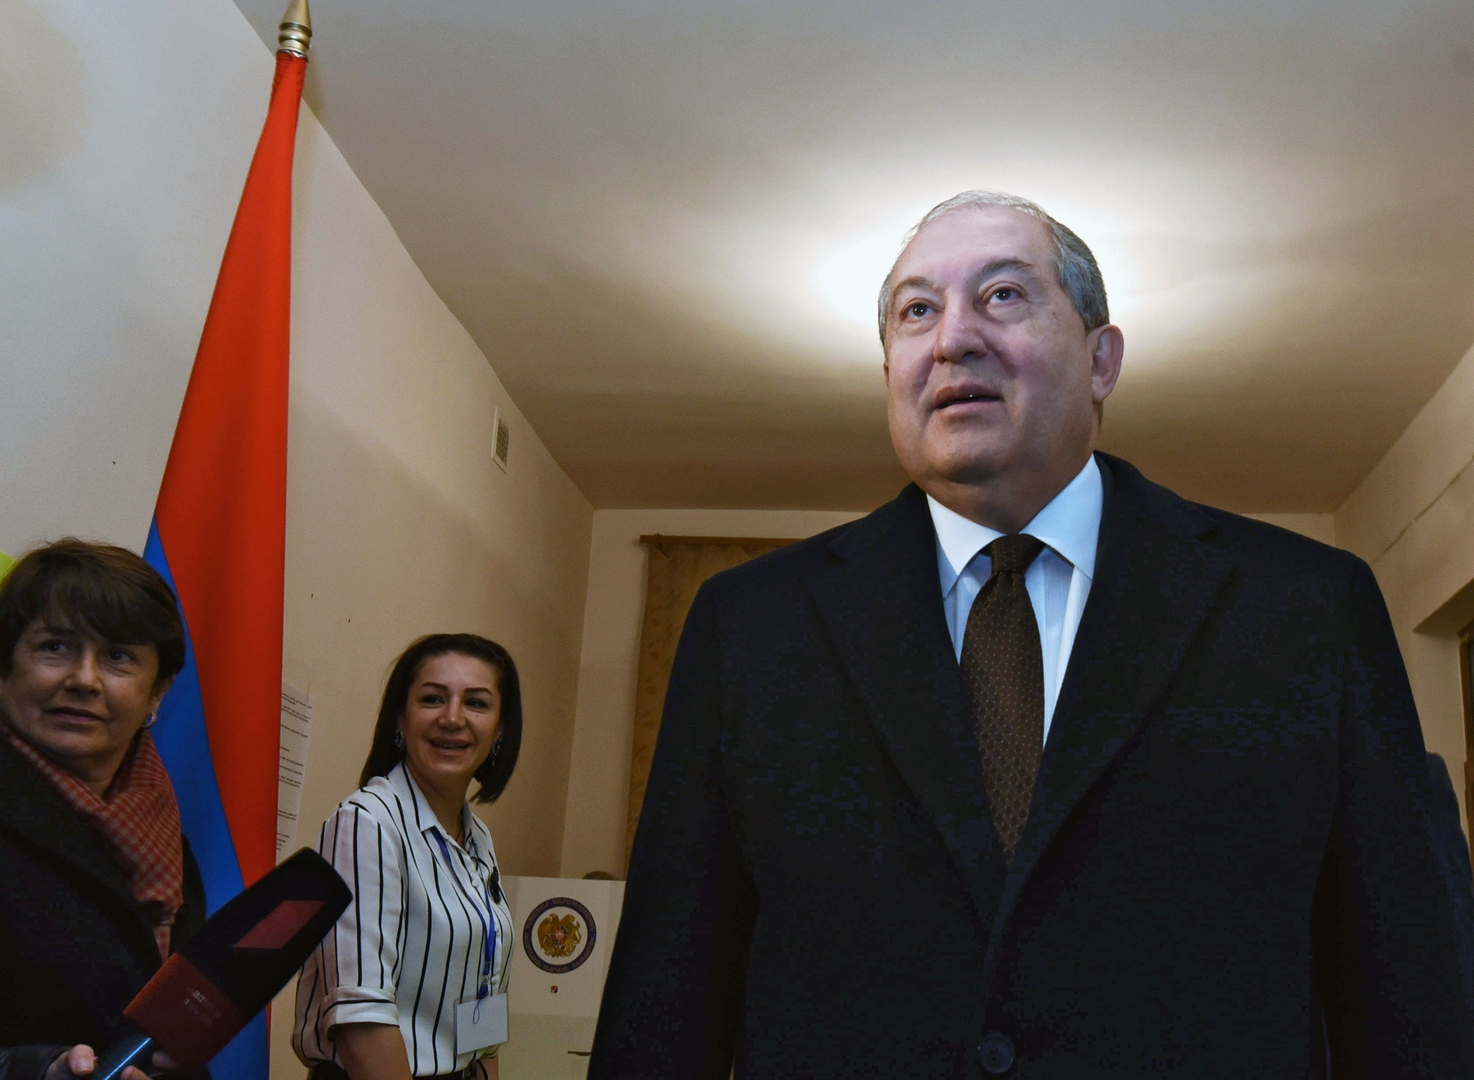 نقل الرئيس الأرمني إلى المستشفى بسبب مضاعفات ناجمة عن كورونا